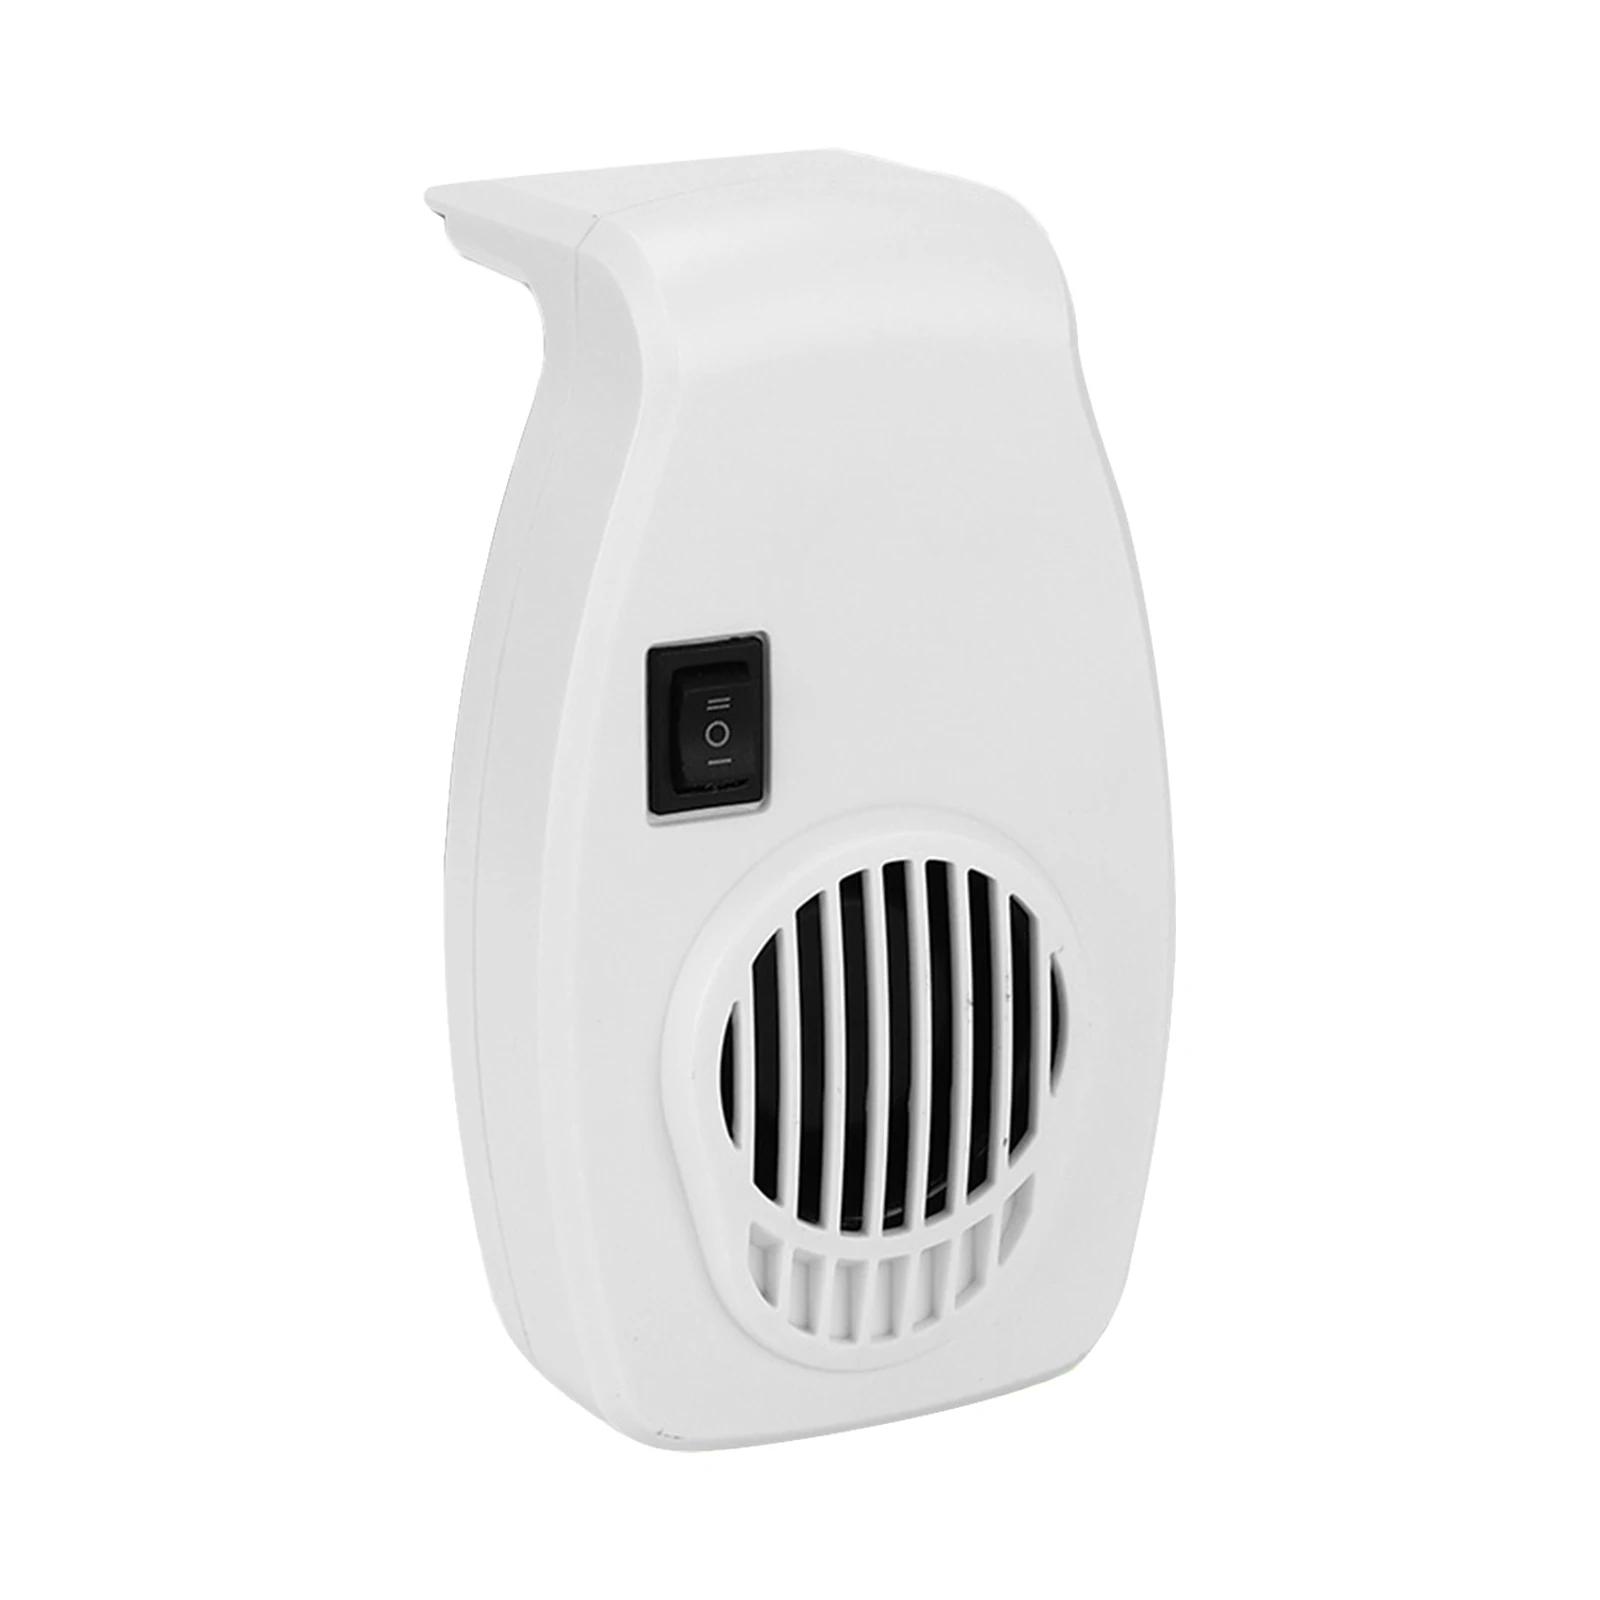 

Охлаждающий вентилятор для аквариума, 2-скоростной внешний подвесной вентилятор для аквариума с контролем температуры, водные принадлежно...